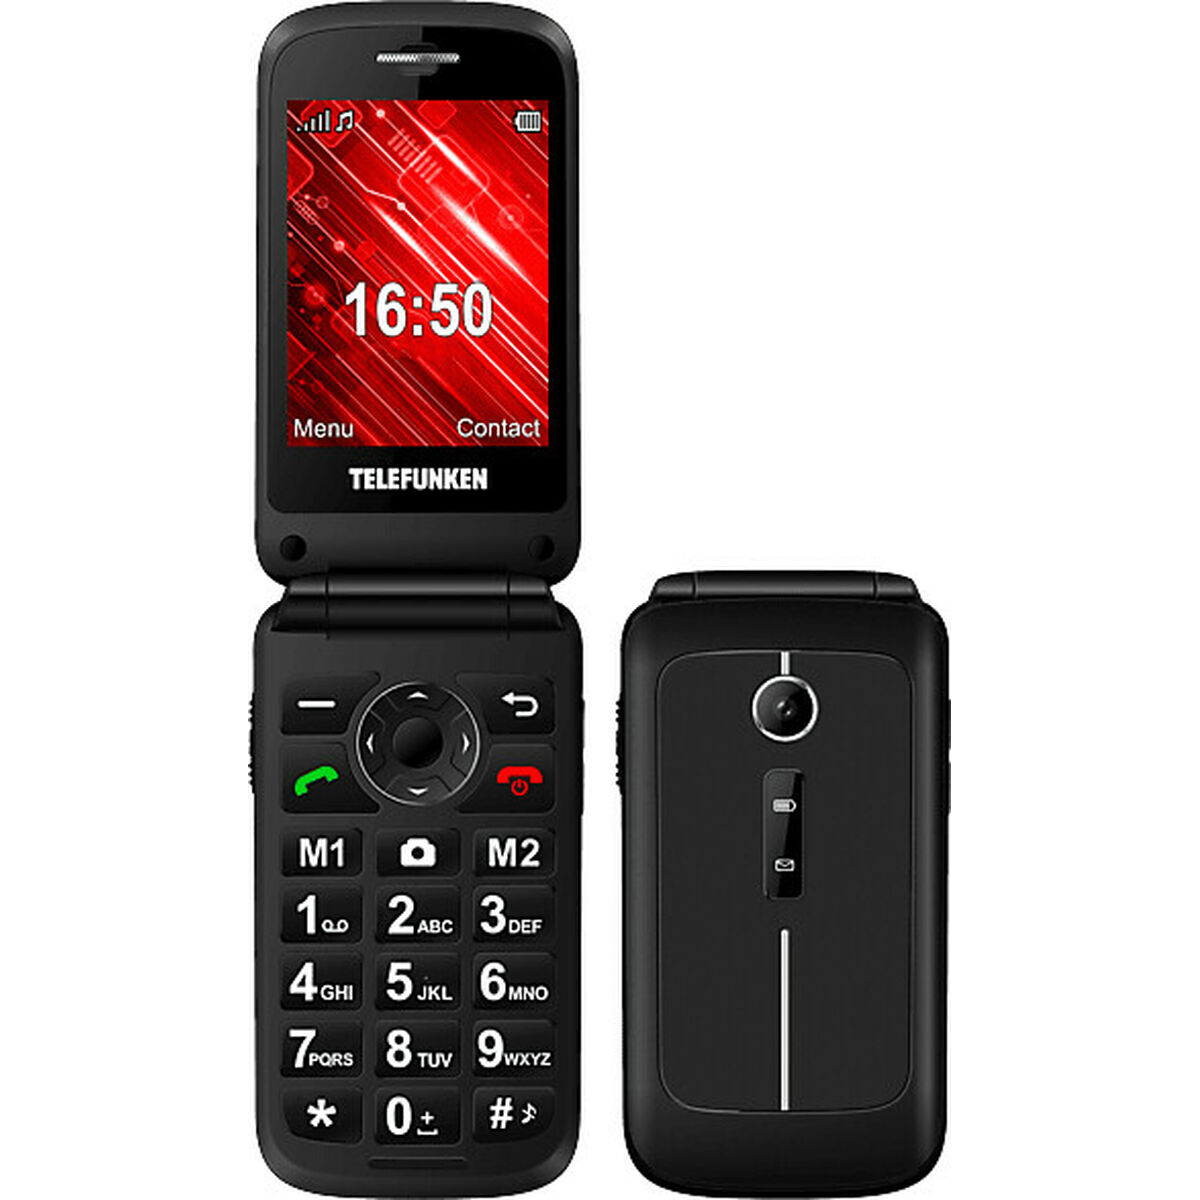 Mobiltelefon til ældre mennesker Telefunken S430 32 GB 2,8"